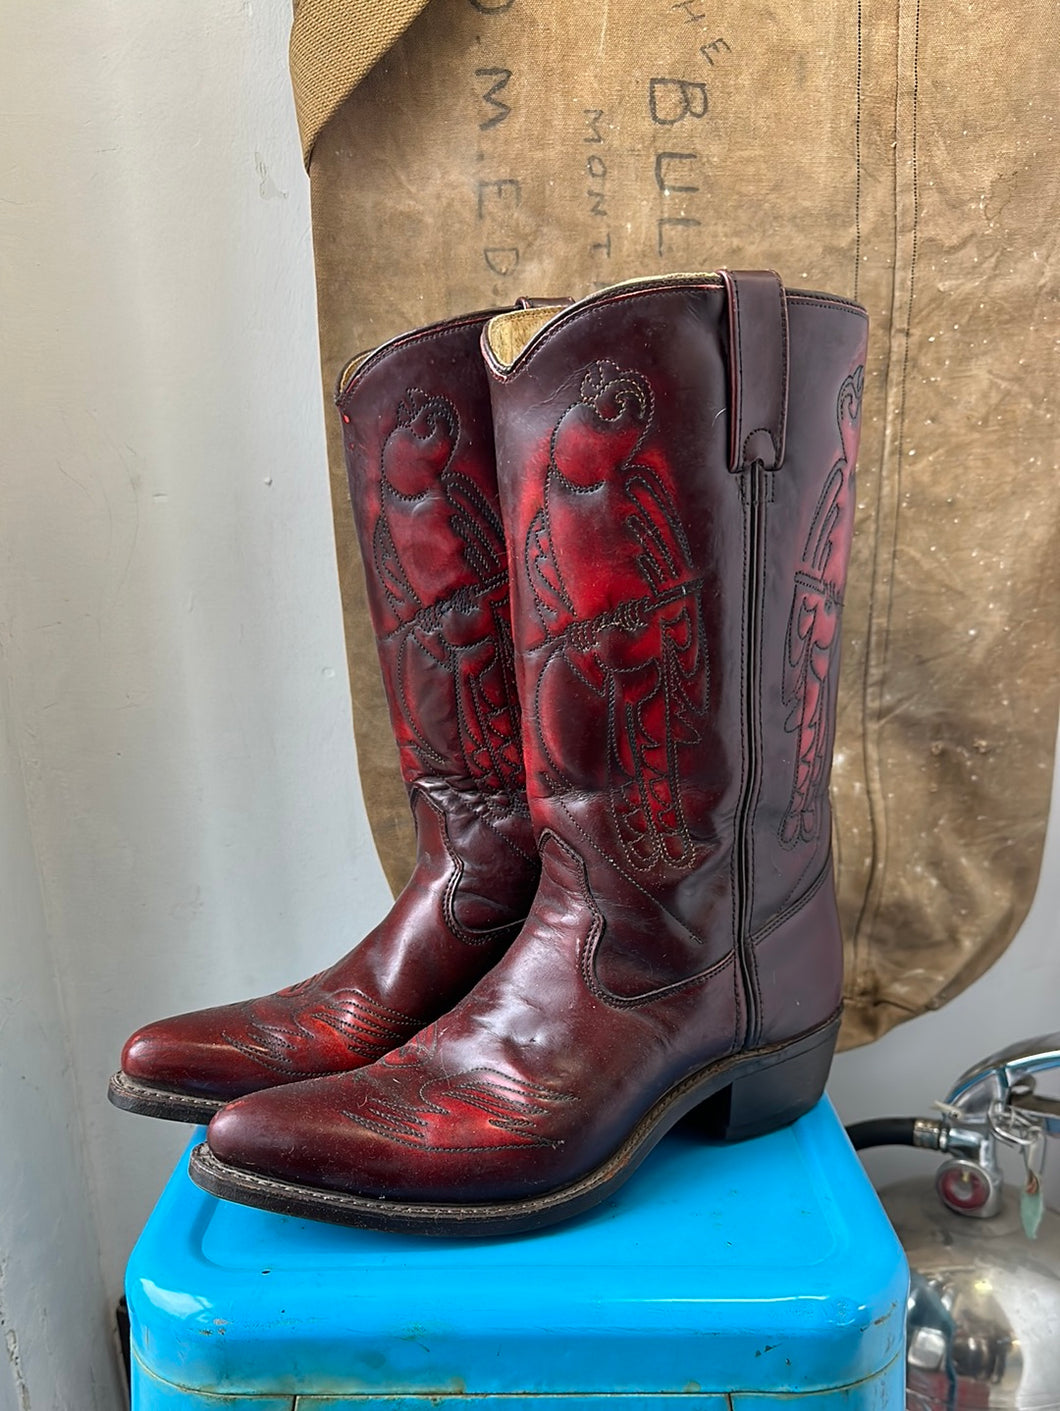 Double H Cowboy Boots - Size 9 M 10.5 W